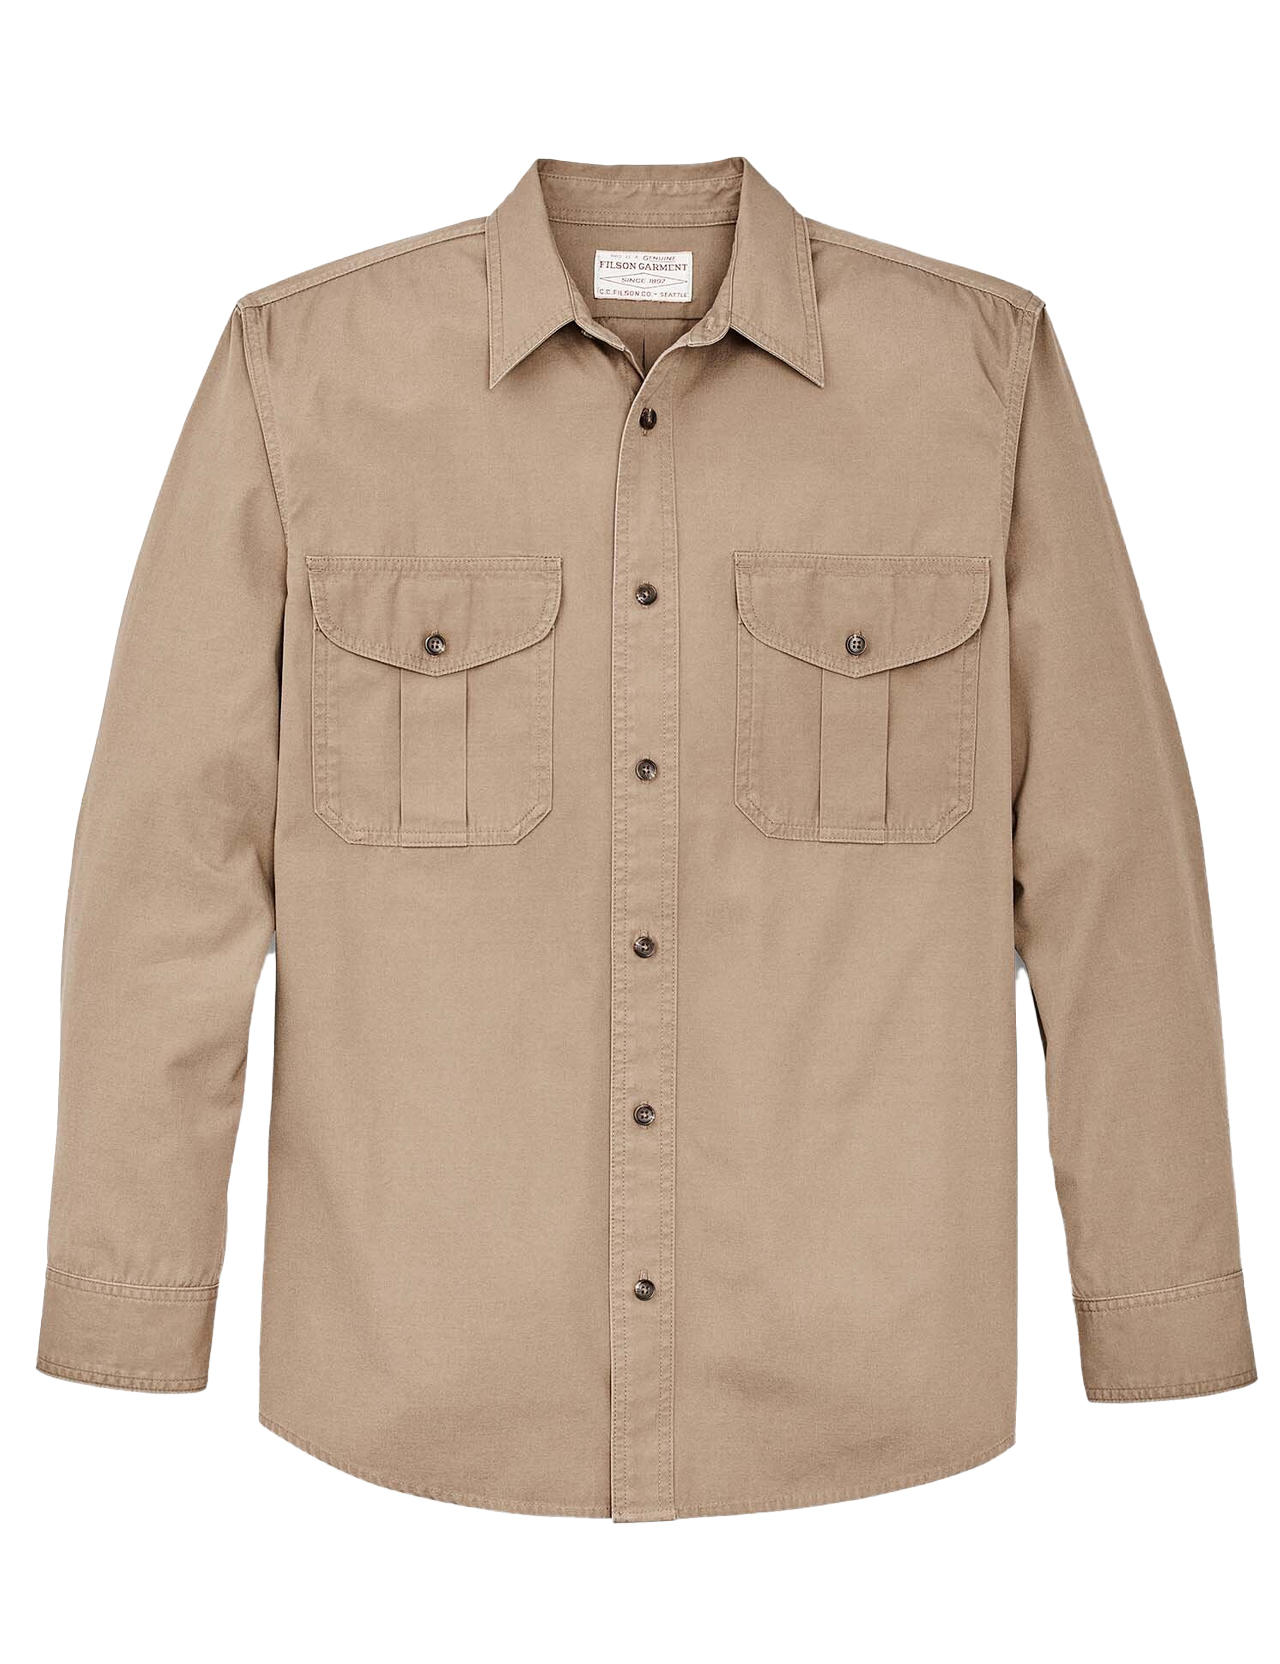 Filson - Safari Cloth Guide Shirt - Safari Khaki